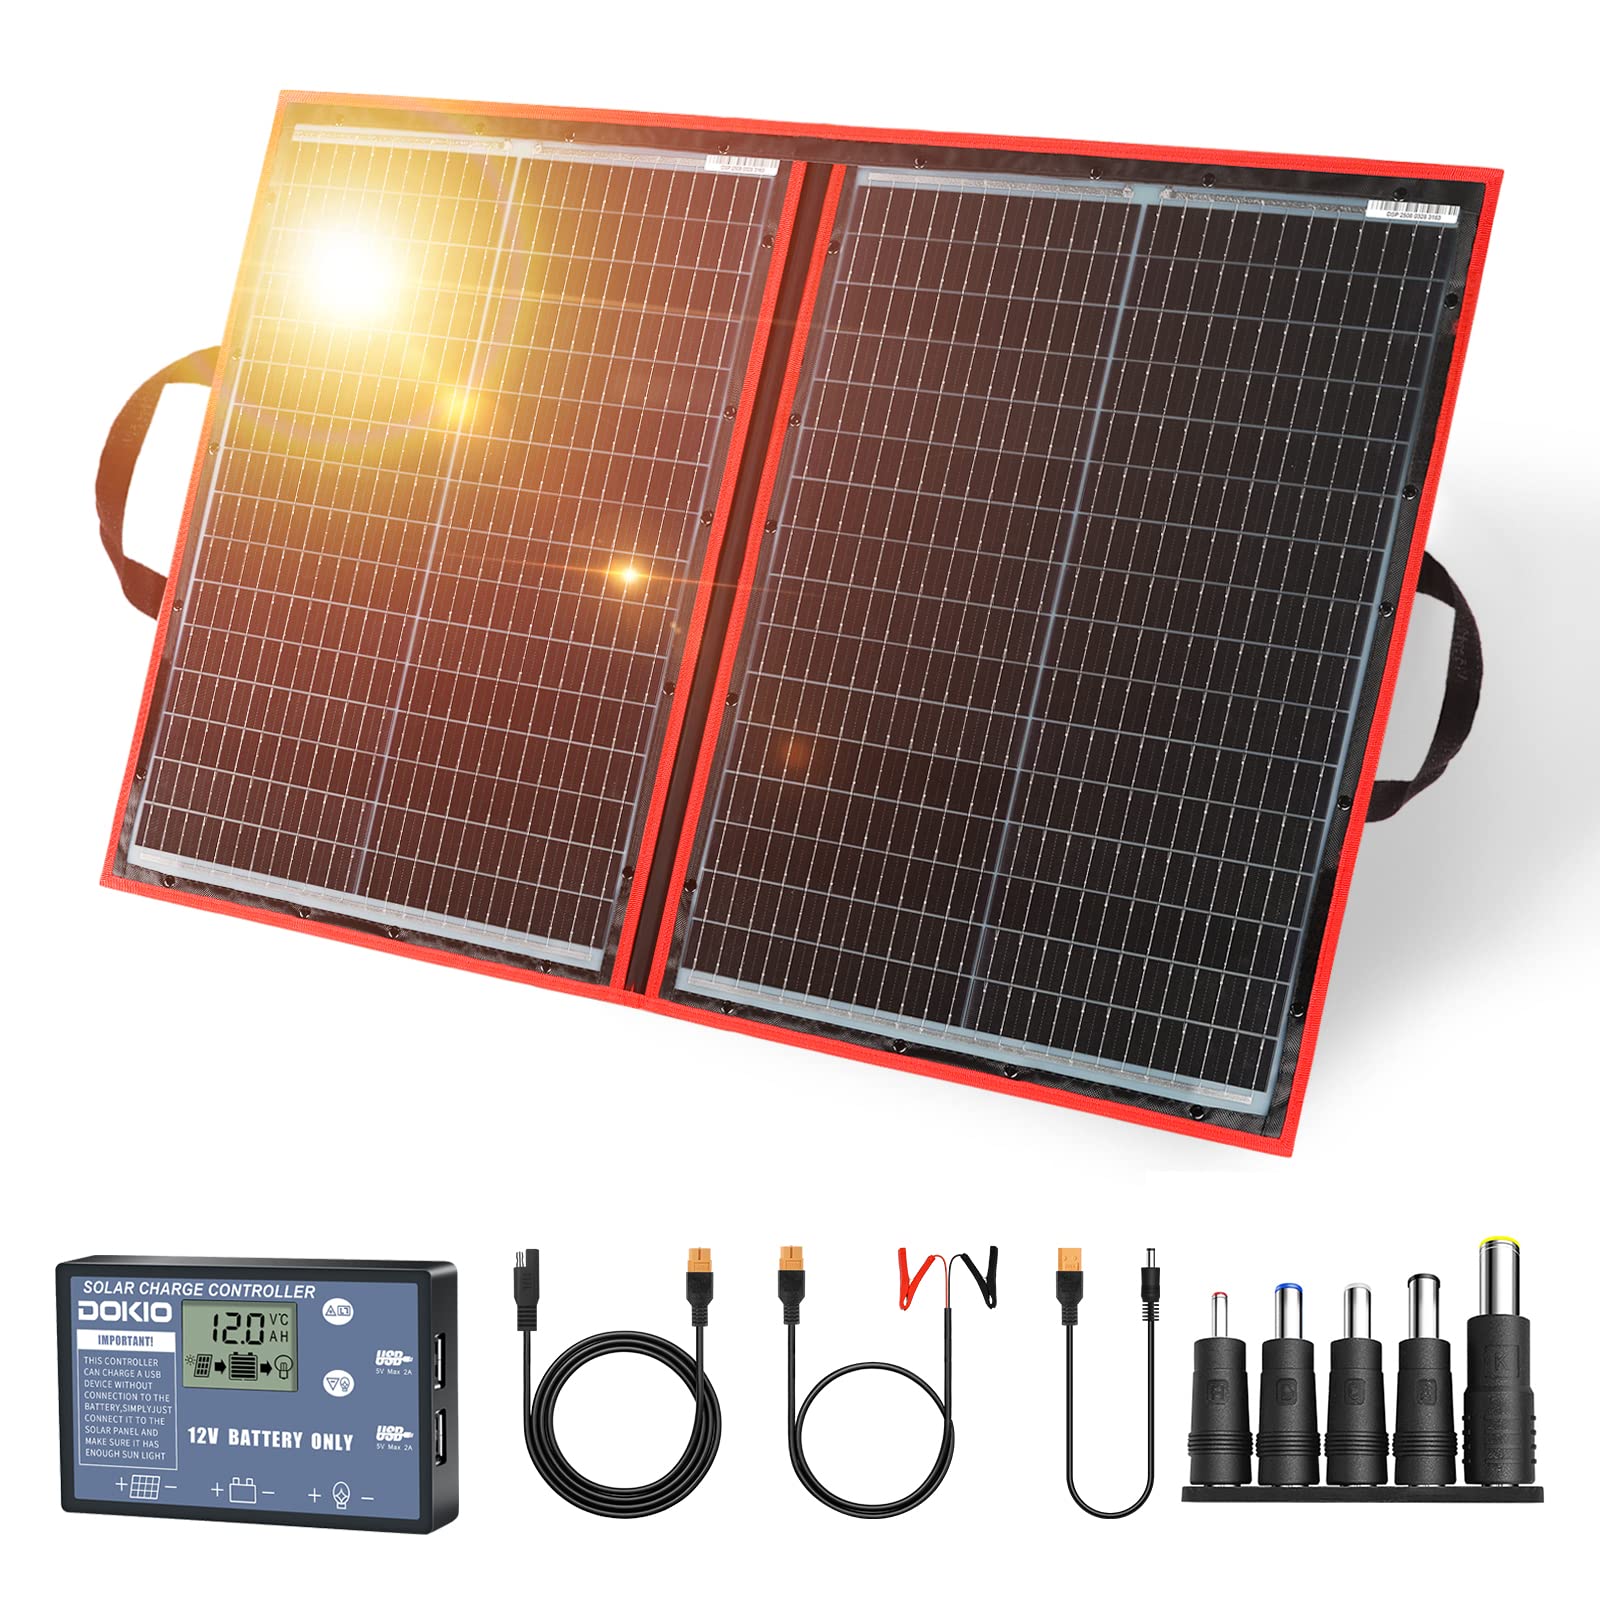 DOKIO 110W 18V Faltbar Solarmodule Monokristalline mit Solarregler(Lcd-Anzeige + 2 Usb-Ausgang) FüR 12v Batterie, AGM, Gelbatterie, SäUrebatterie, Generatoren